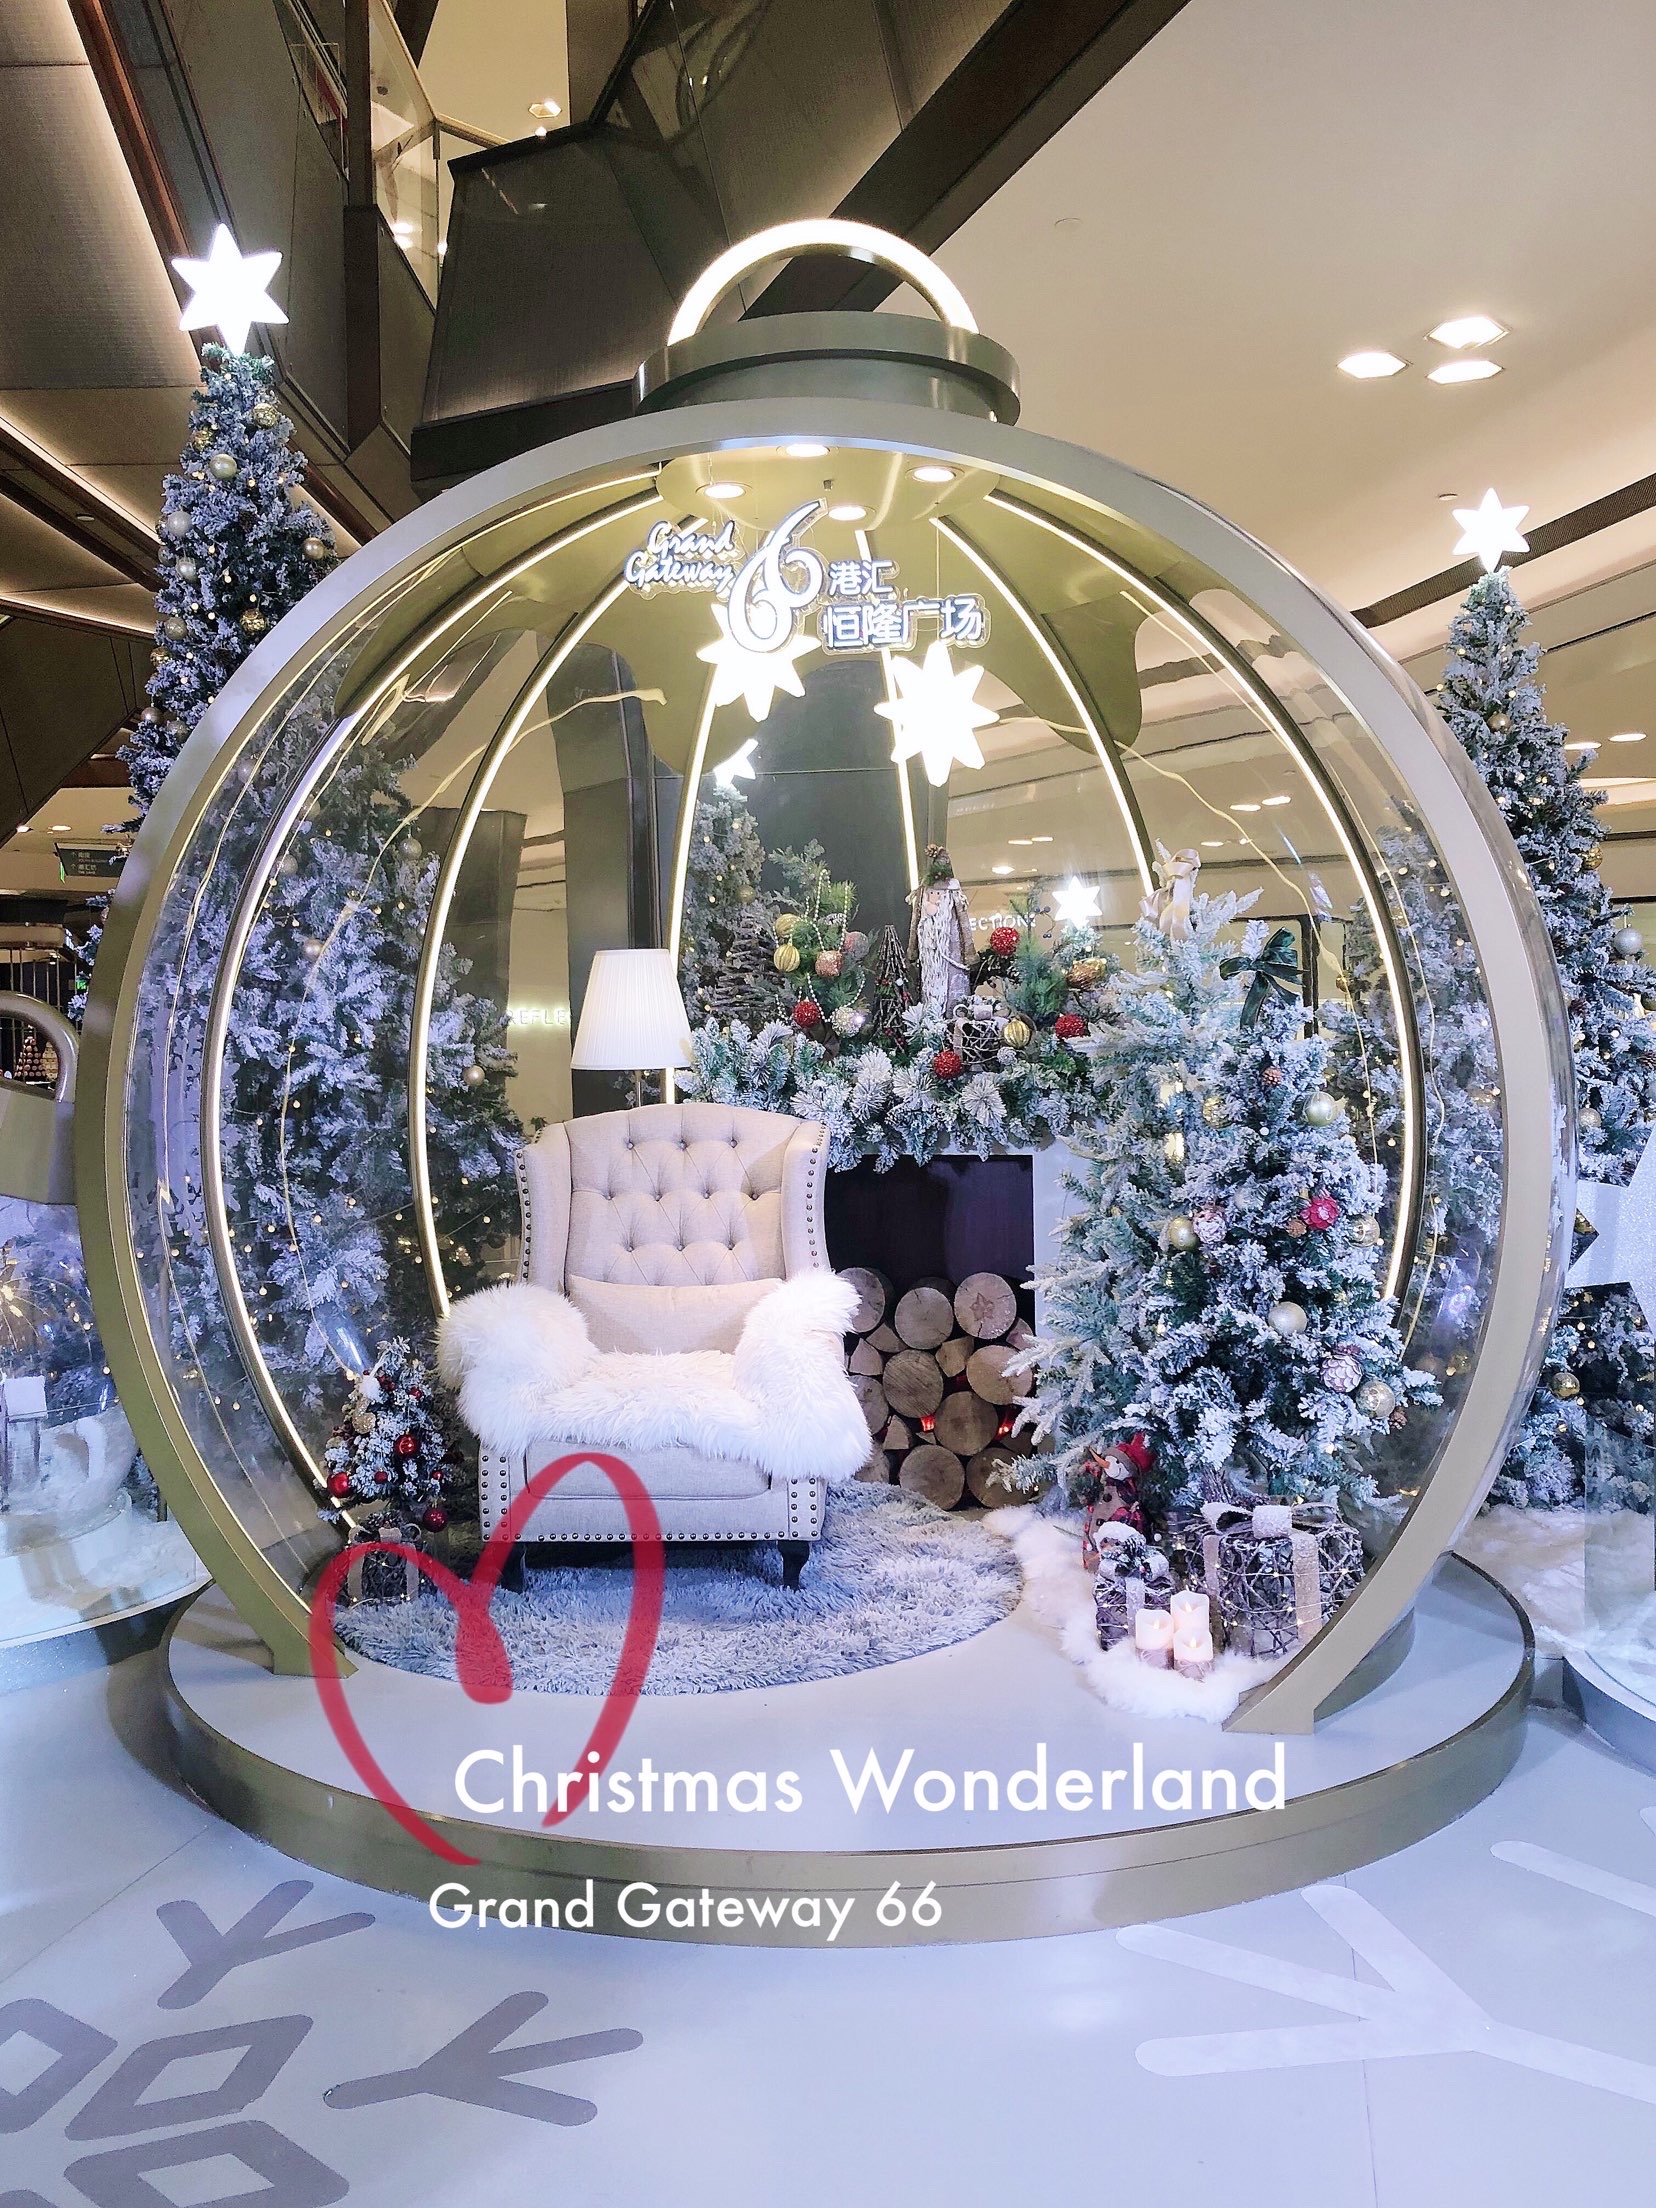 魔都圣诞季｜Christmas Wonderland ❄️坐标：港汇恒隆广场 🏷️标签：2019最美